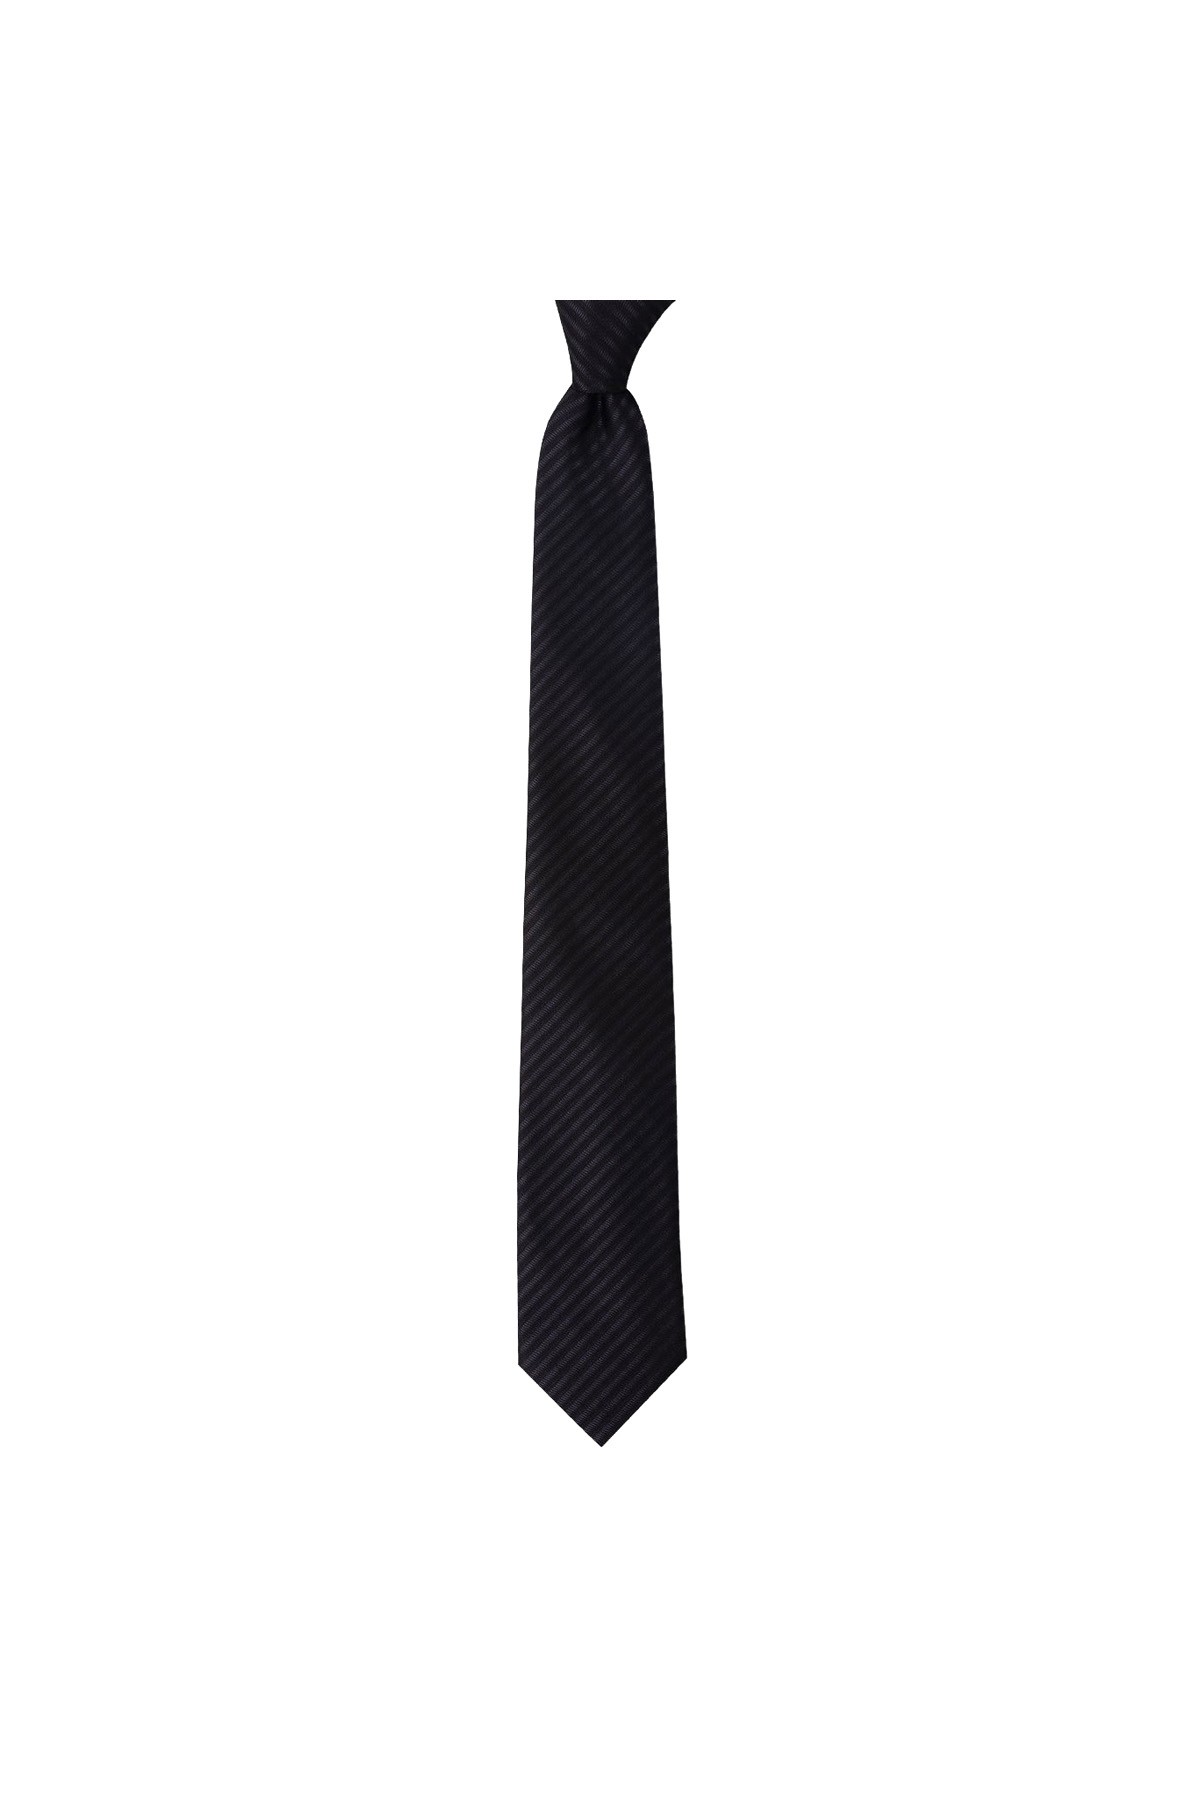 Mikro desenli 7 cm genişliğinde ince kravat